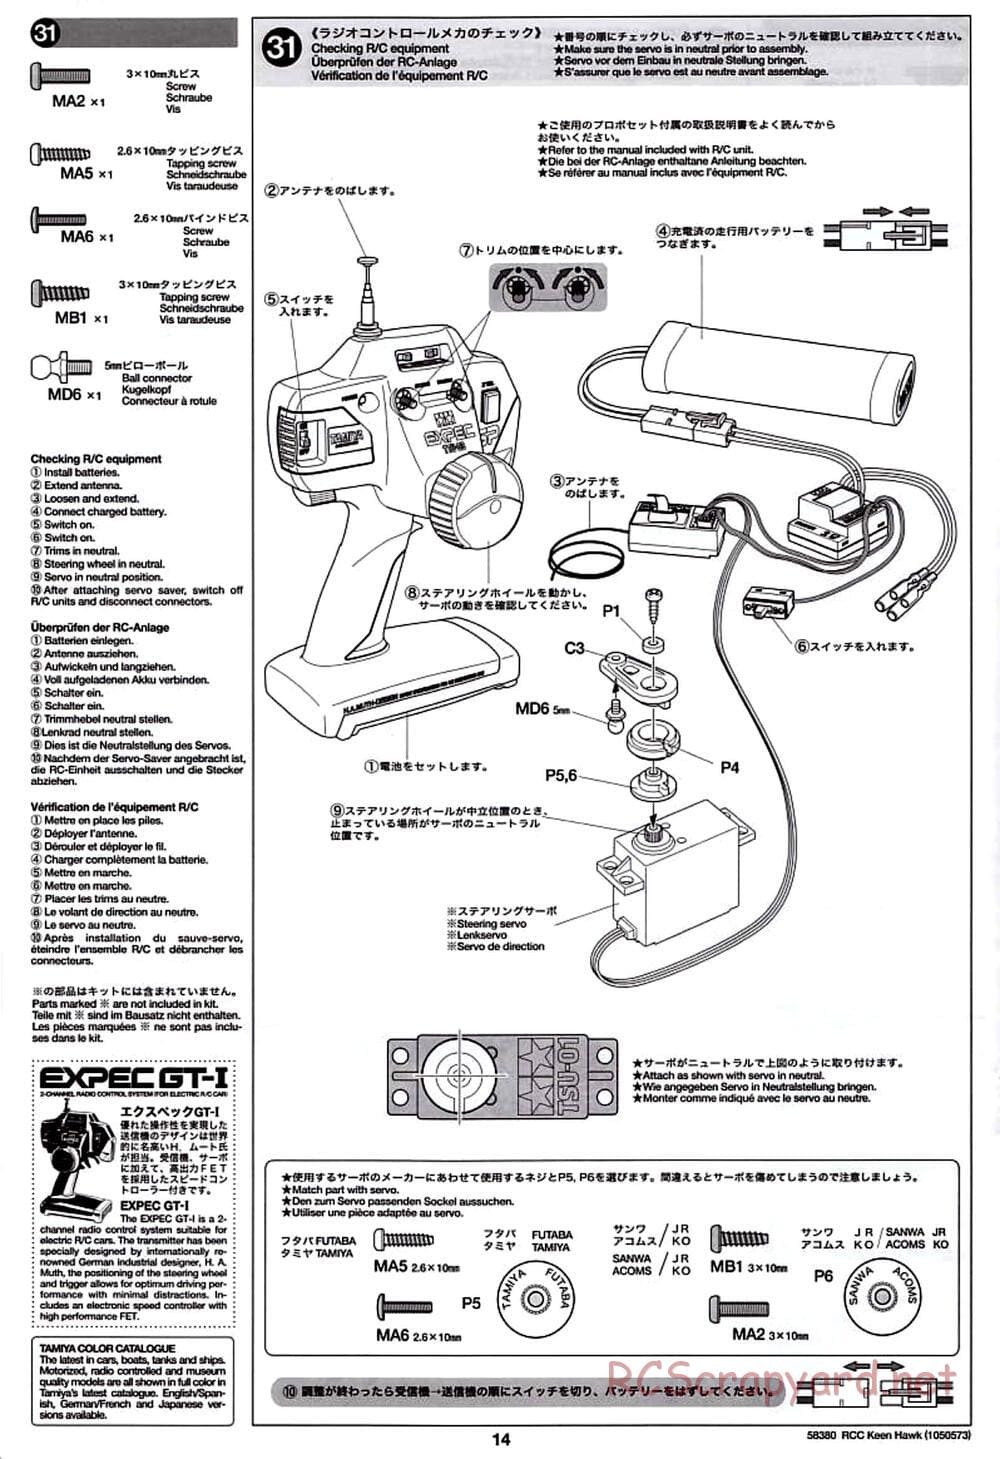 Tamiya - Keen Hawk Chassis - Manual - Page 14